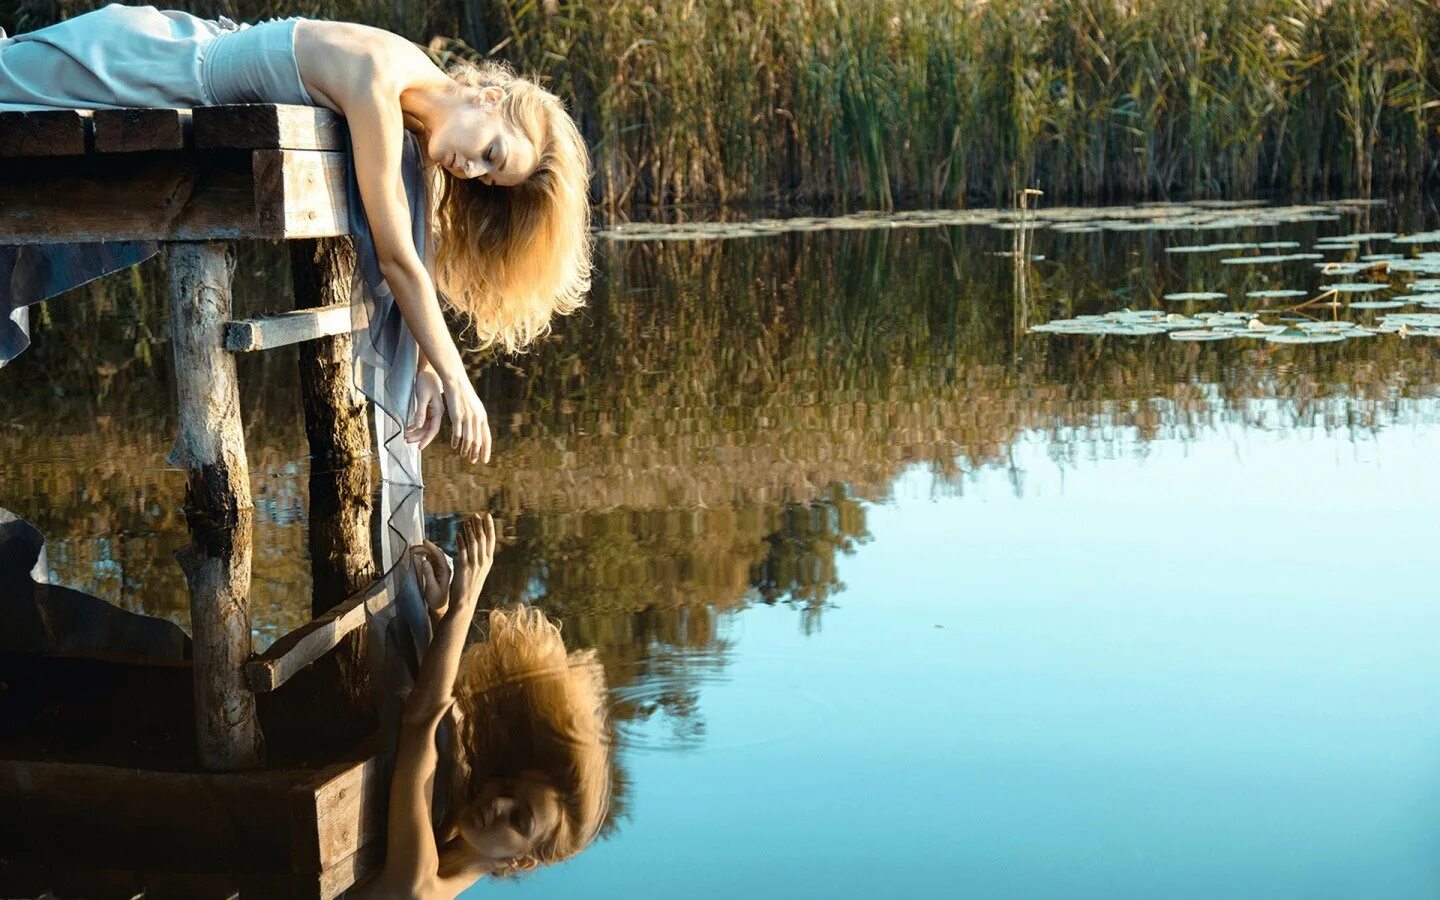 Видео отражались. Фотосессия на мостике у воды. Девушка в воде. Отражение девушки в воде. Отражение в воде.